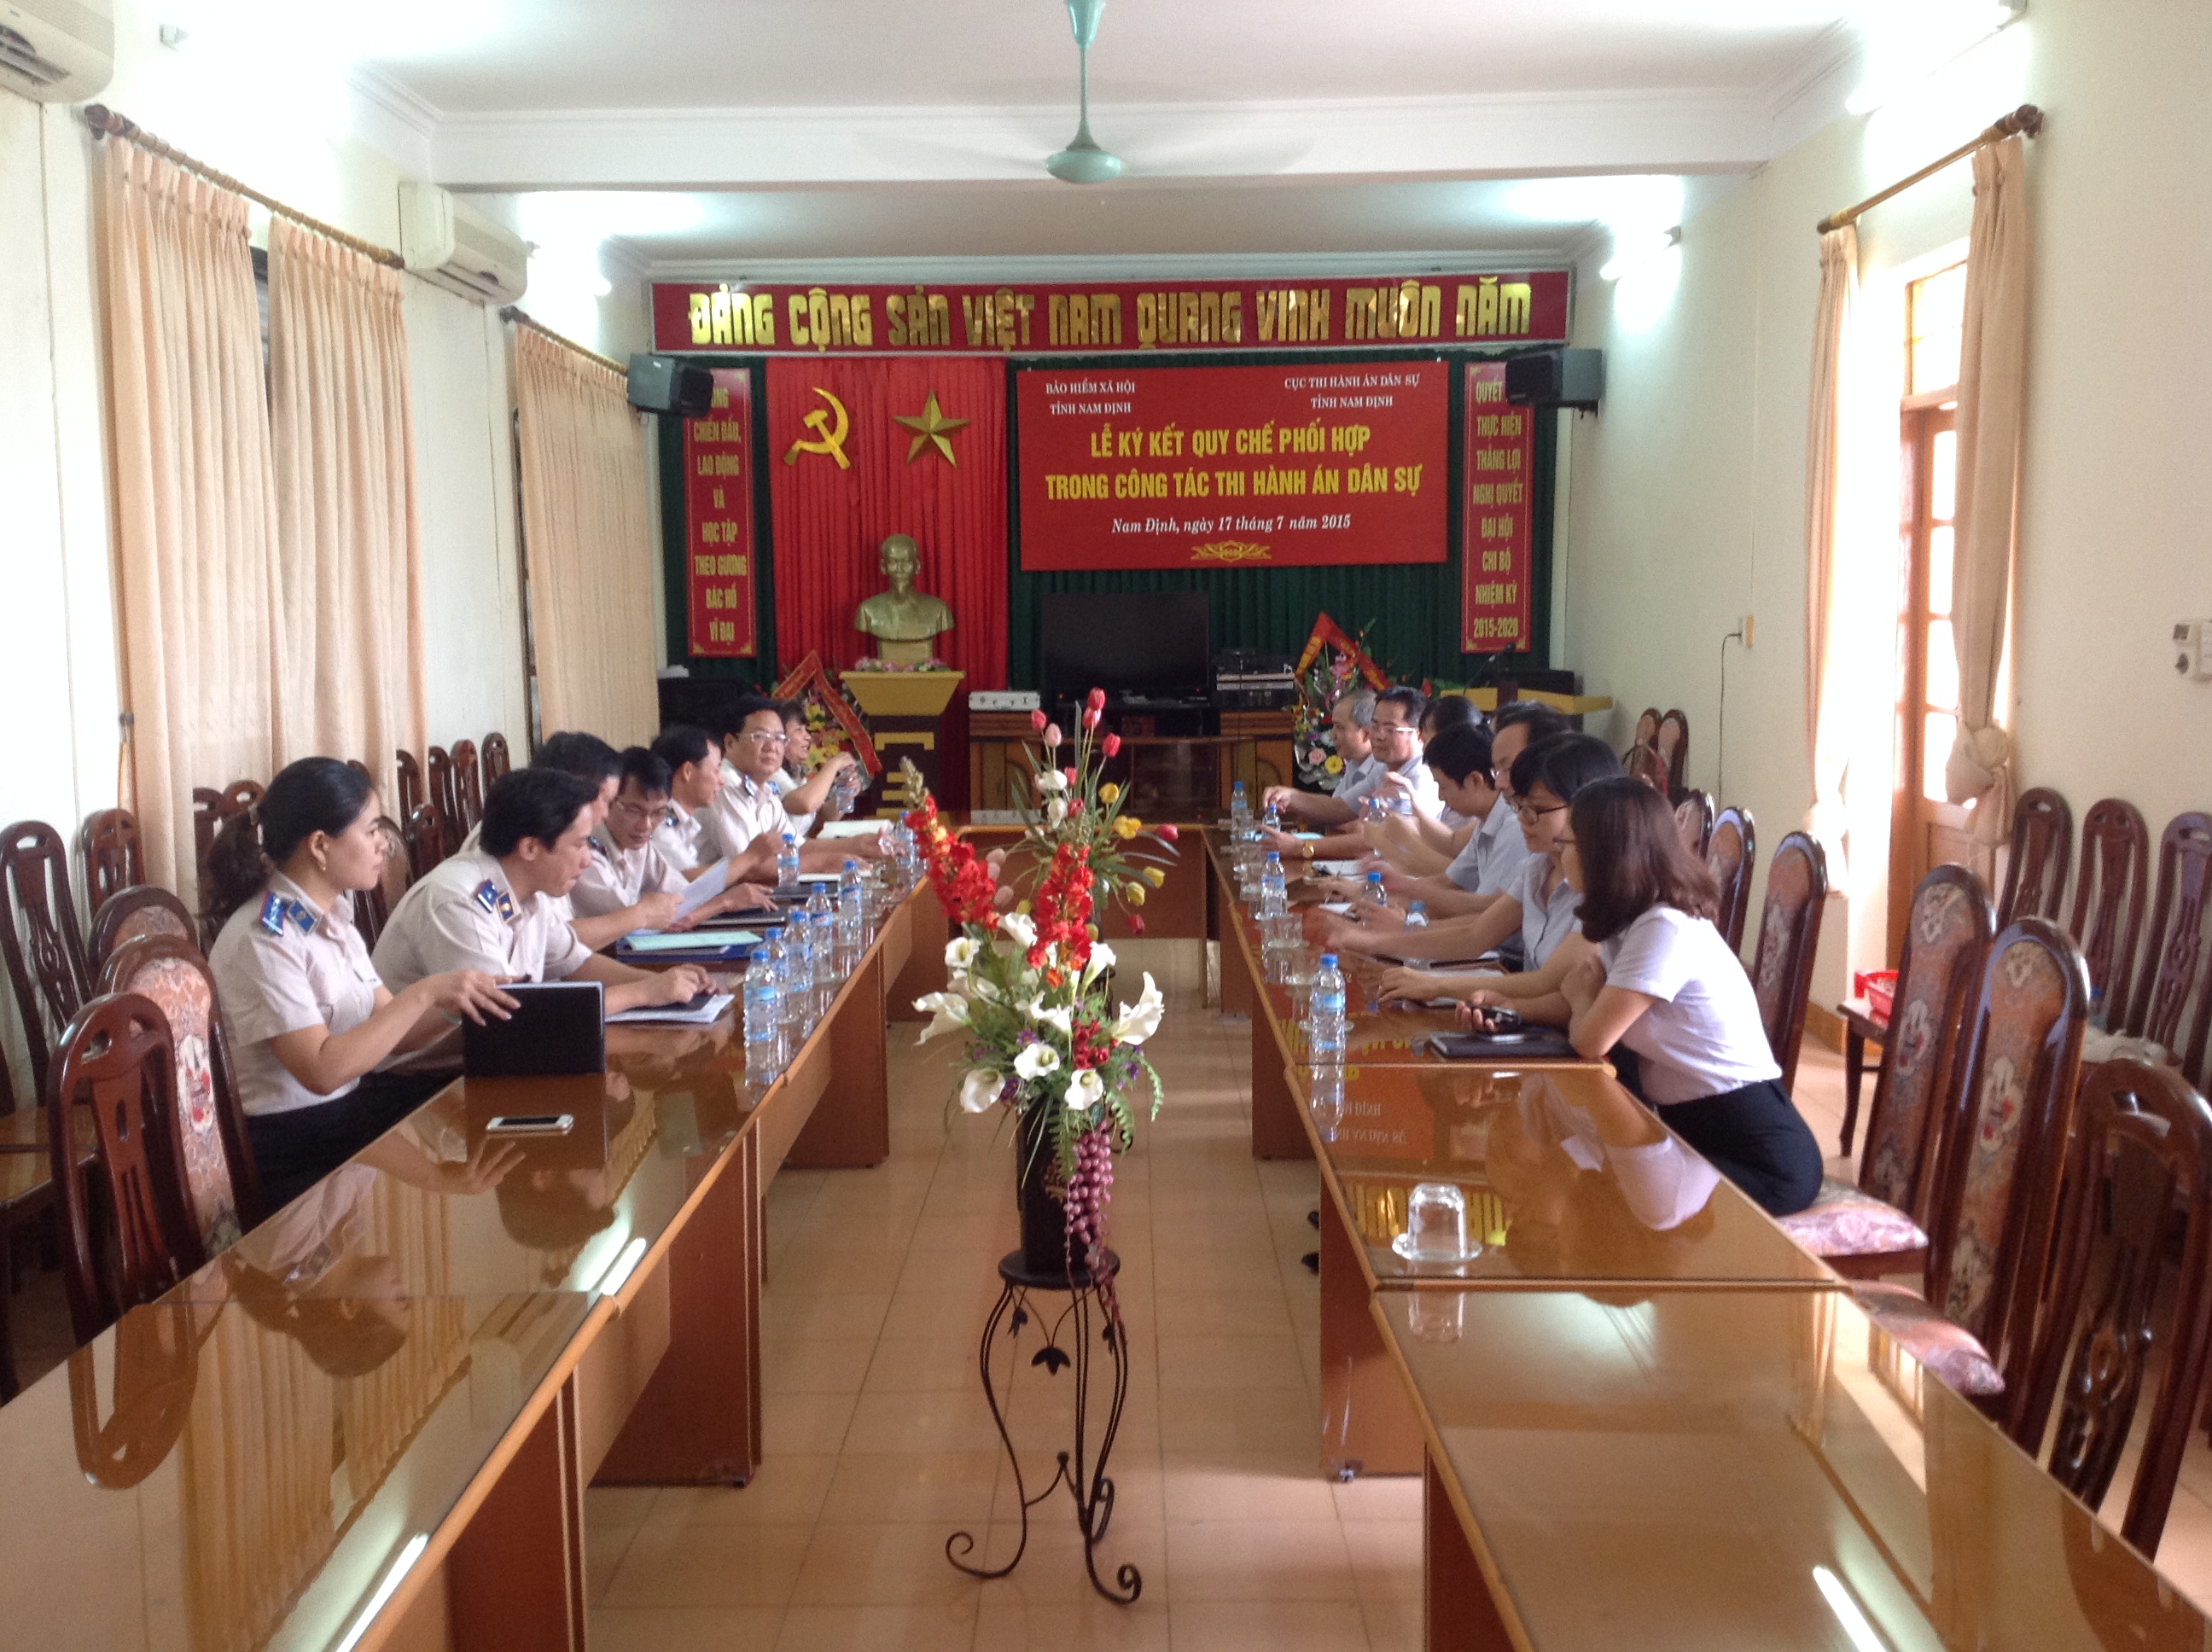 Lễ ký kết Quy chế phối hợp trong công tác thi hành án dân sự giữa Cục Thi hành án dân sự tỉnh Nam Định với Bảo hiểm xã hội tỉnh Nam Định